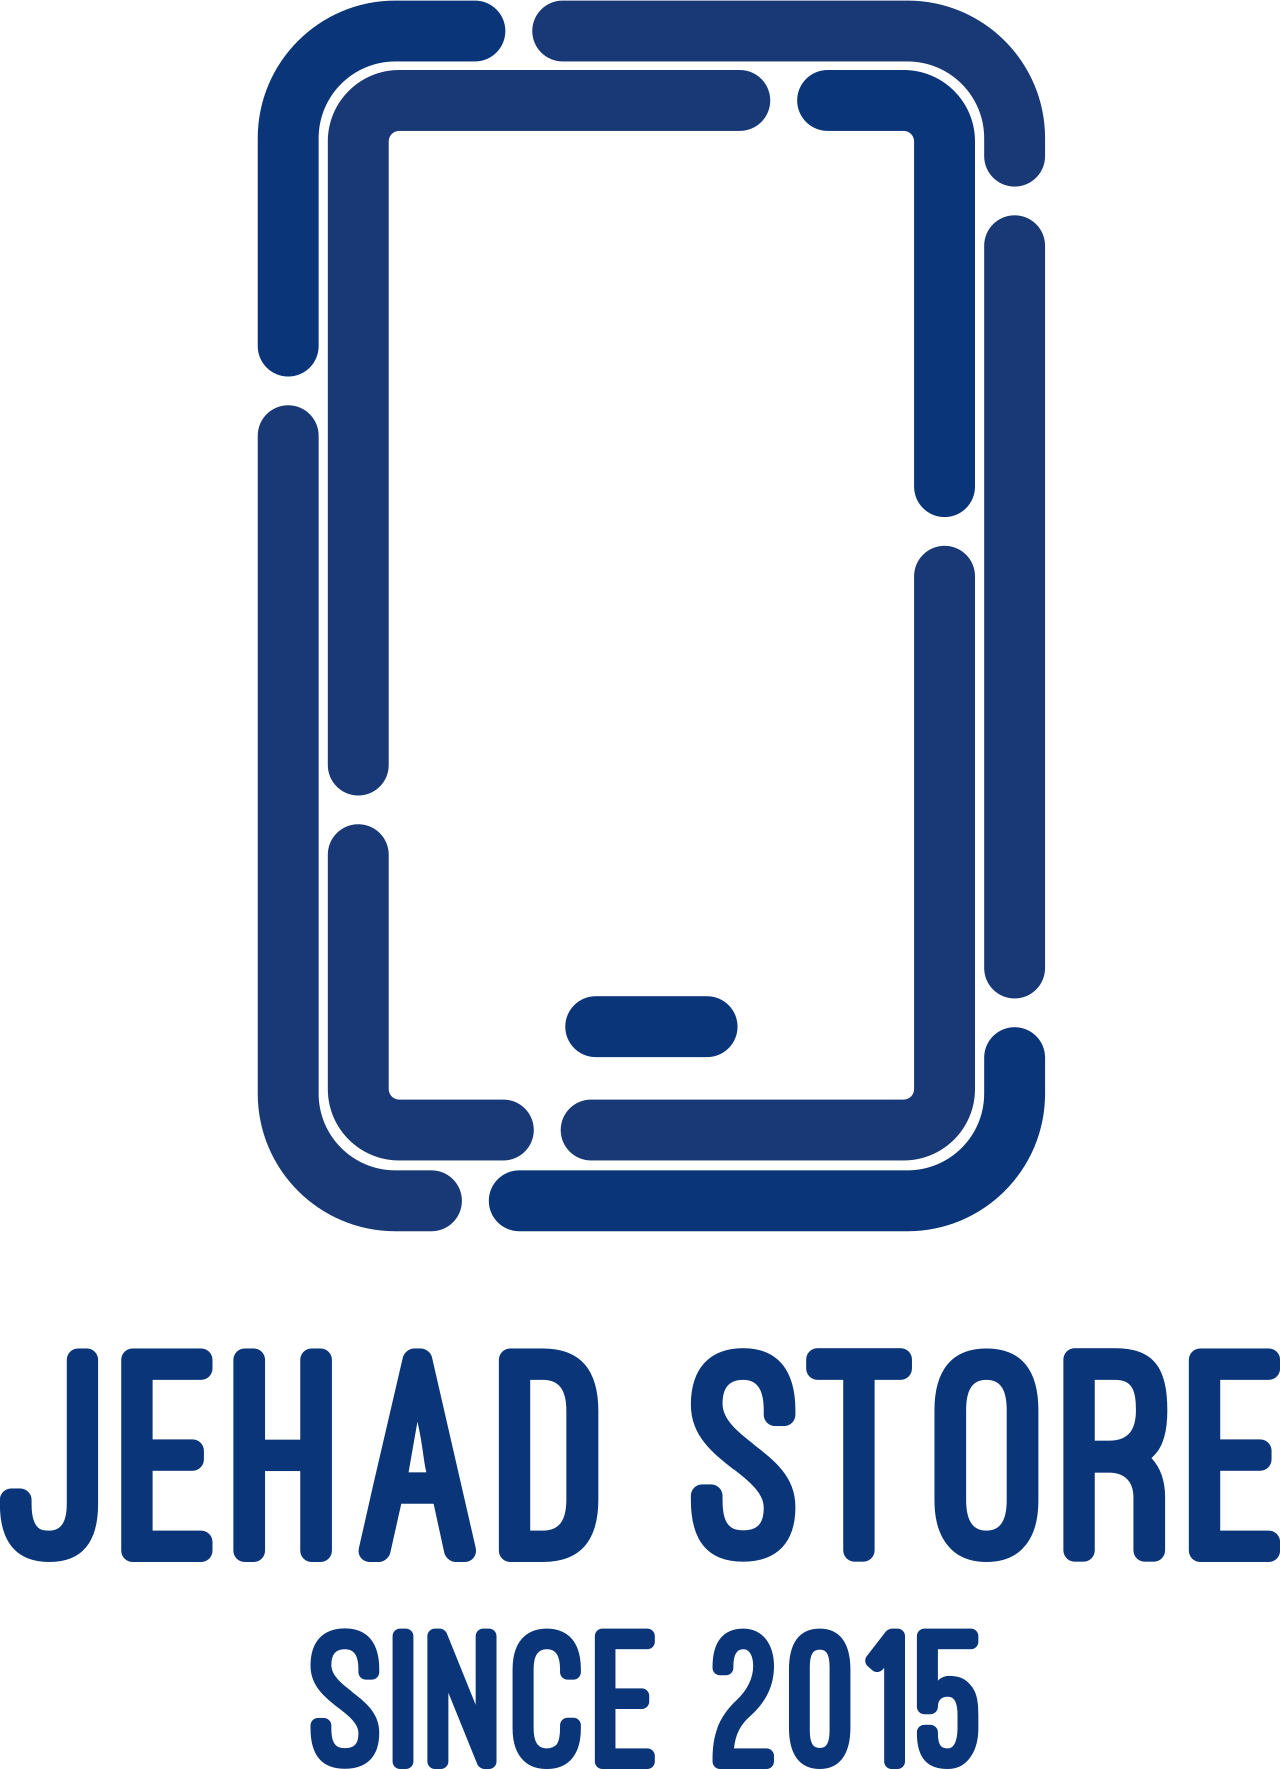 jehad store's logo